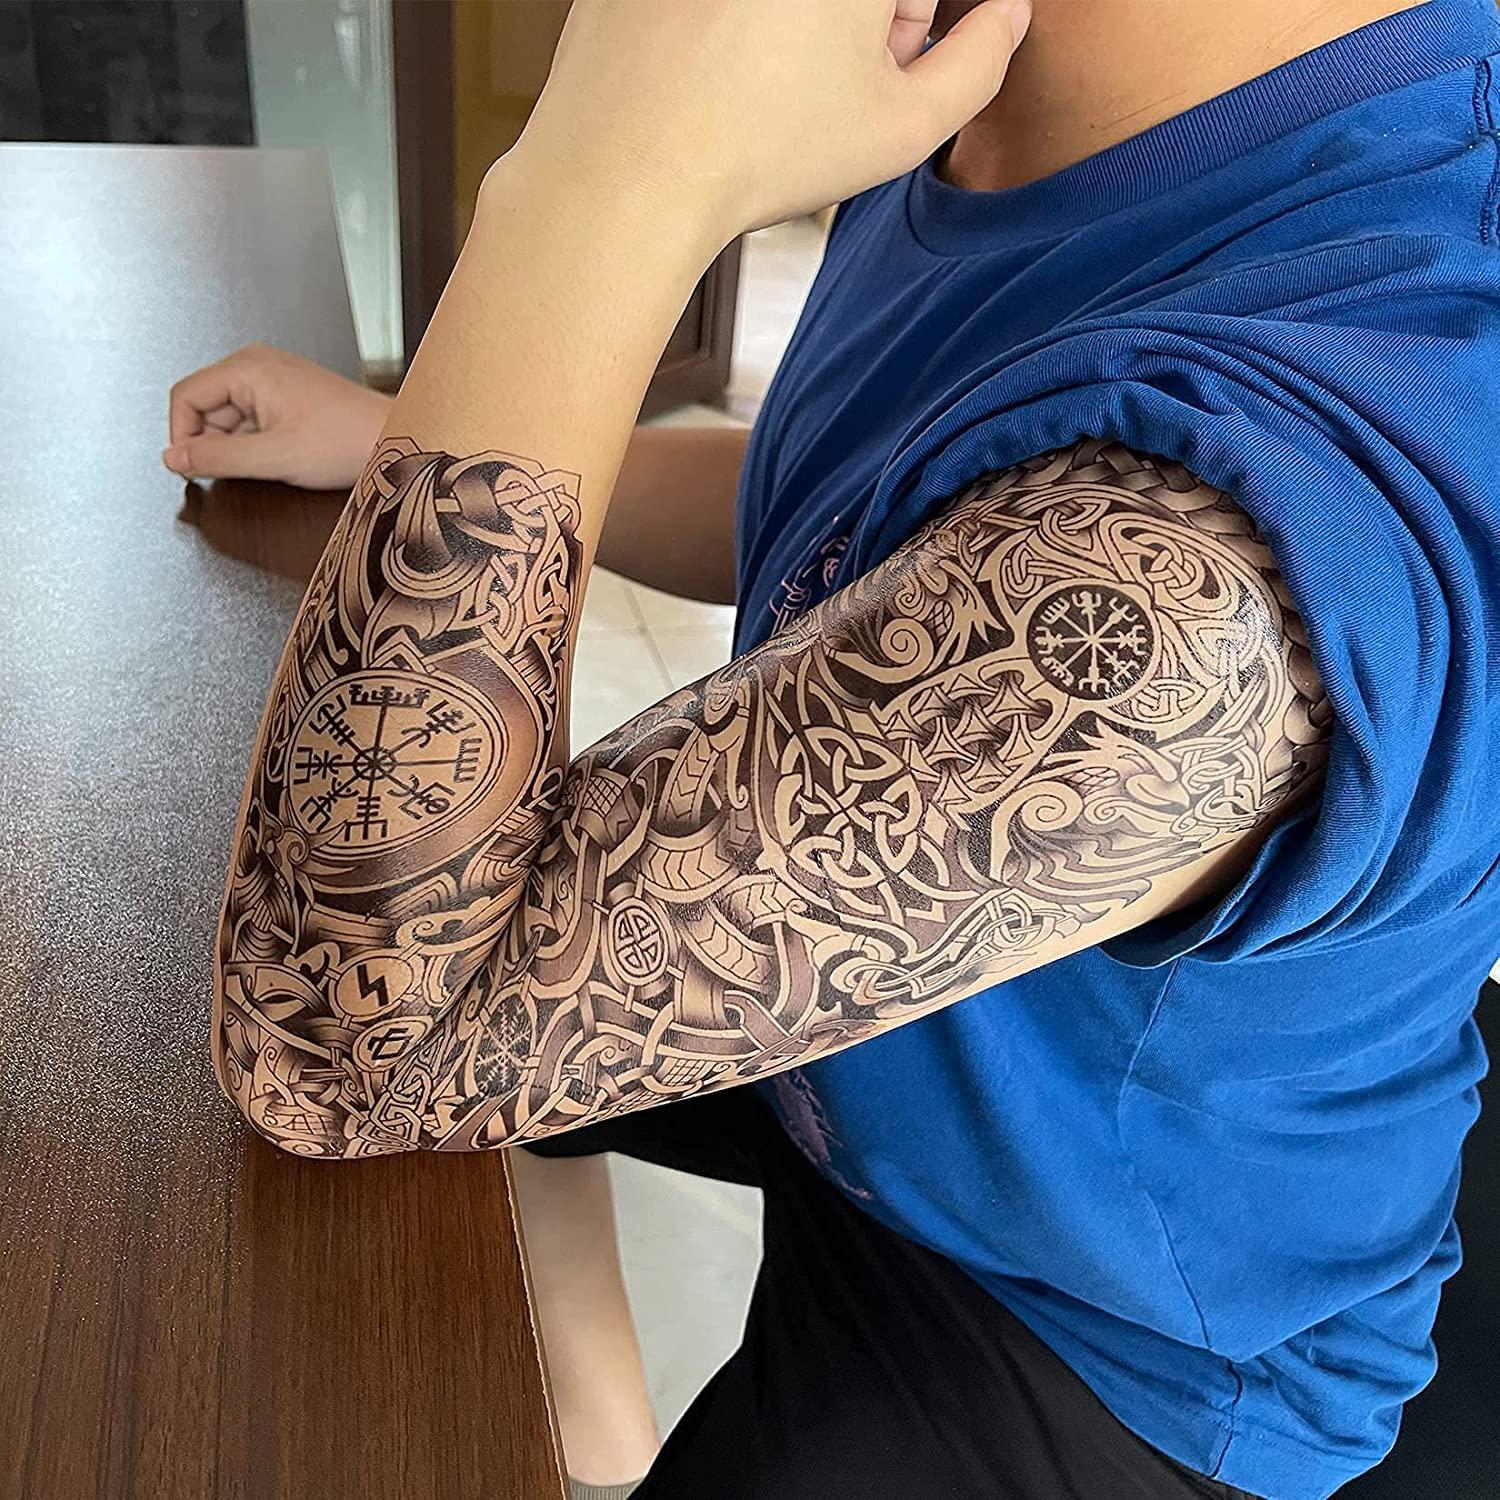 Tattoo uploaded by Adrian Sagastume • Pt 2. Japanese lotus flower wrist band  #japanesetattoo #lotus #lotustattoo #japanese #color #band • Tattoodo